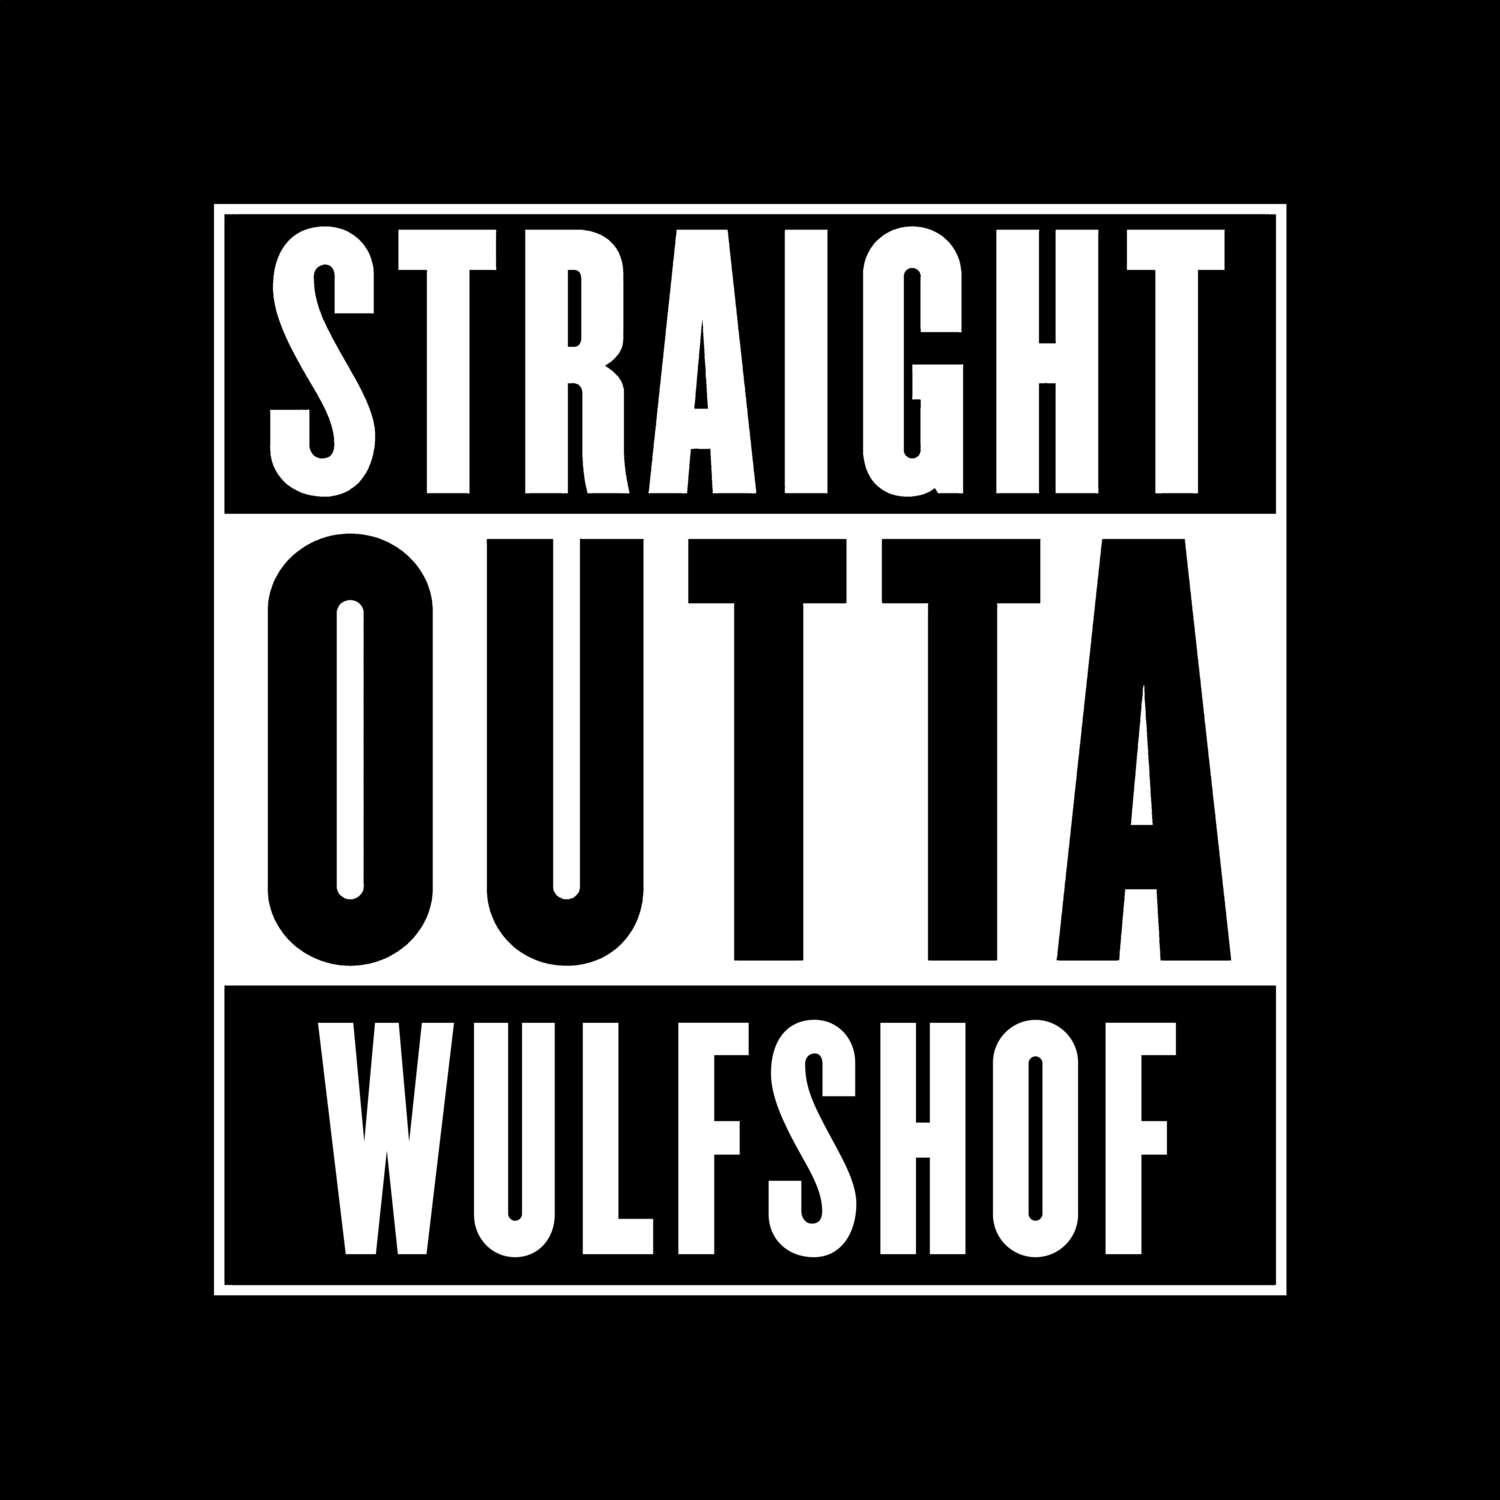 Wulfshof T-Shirt »Straight Outta«